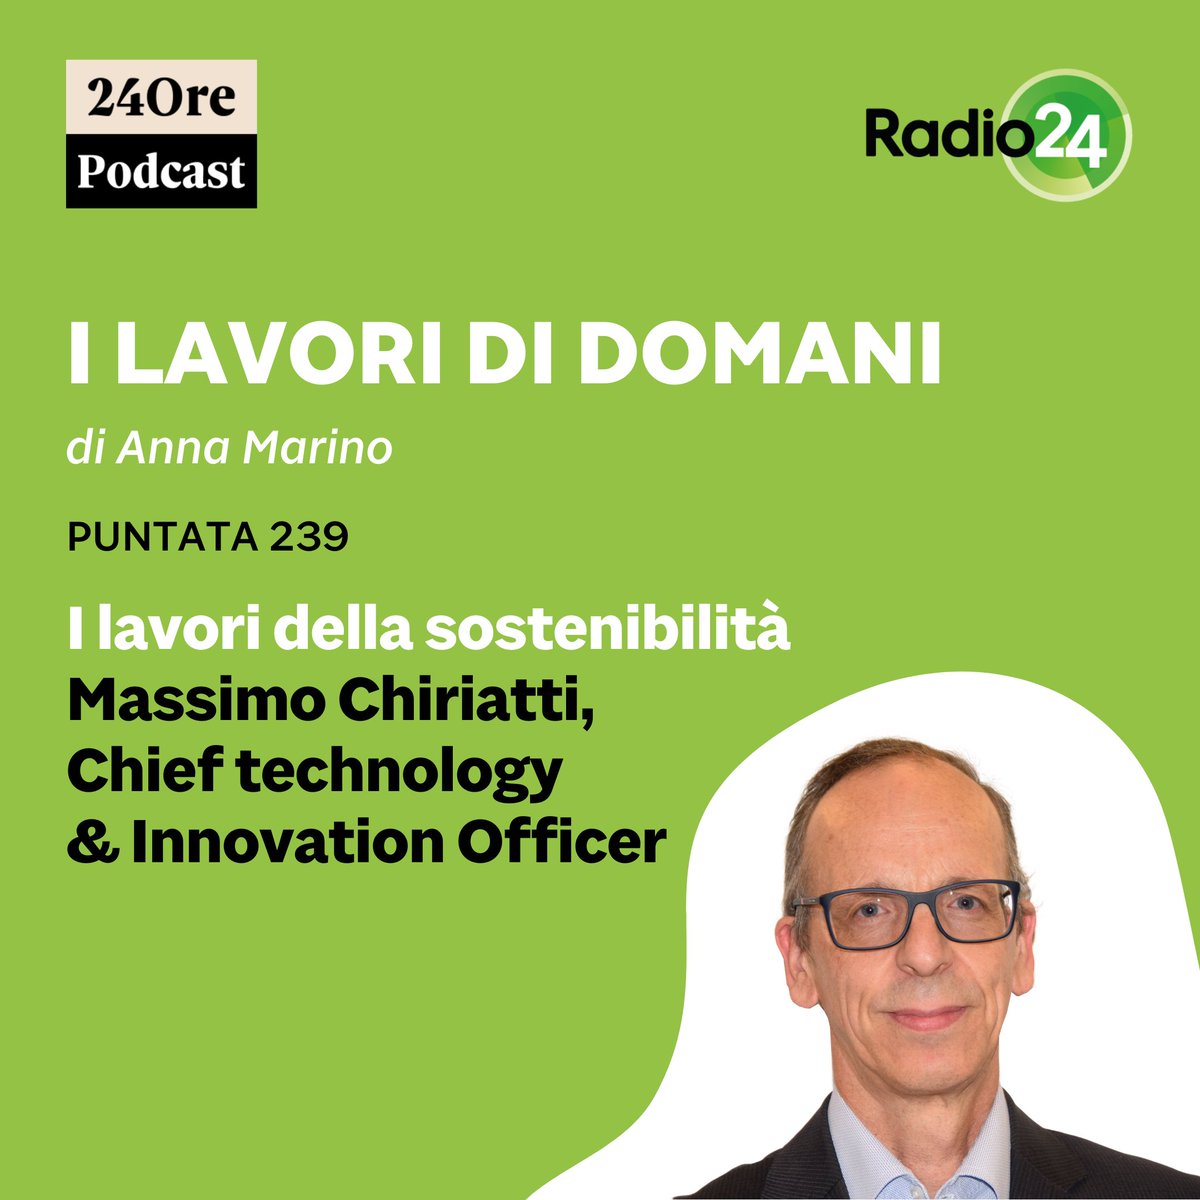 💡 Massimo Chiriatti, CTO & Innovation Officer di Lenovo, è uno dei massimi esperti in Italia sull'intelligenza artificiale. Scopri di più sulla sua esperienza e sui libri che ha scritto: tinyurl.com/ms2ythzb #Tecnologia #Innovazione #IntelligenzaArtificiale #CTO #Lenovo